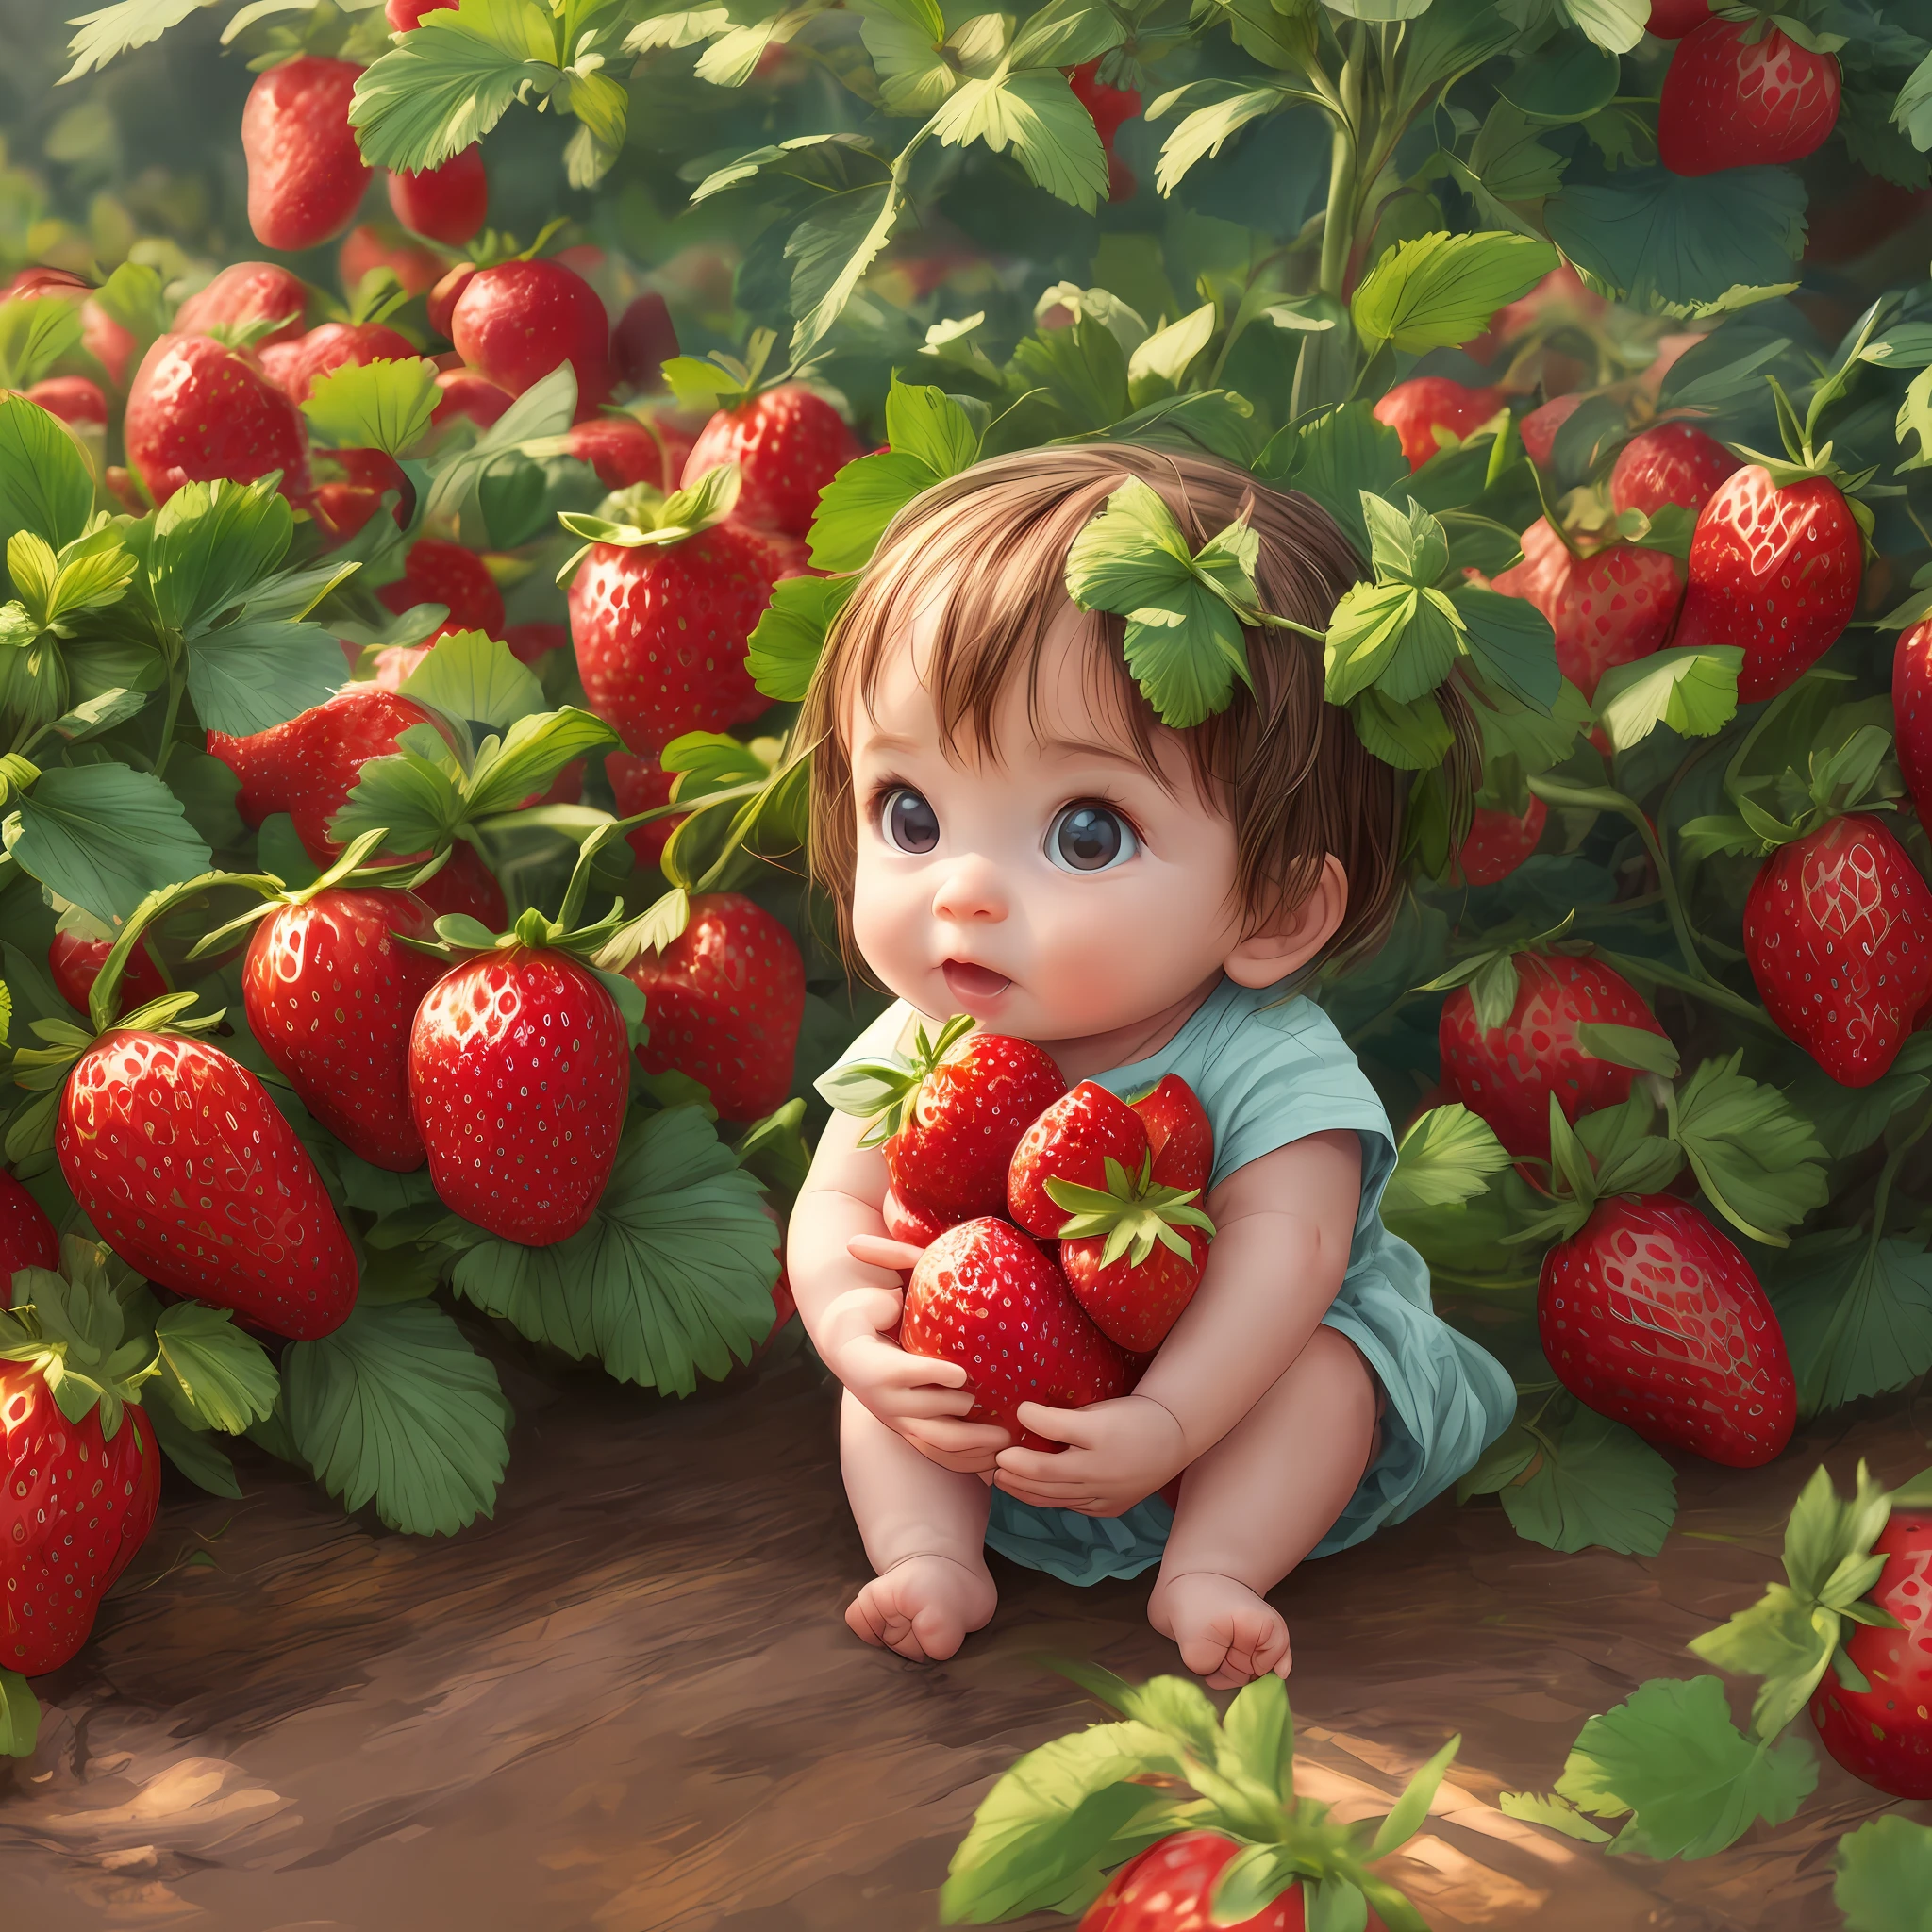 طفل صغير في حديقة الفراولة, الفراولة الناضجة, شمس, هزار, ضوء ديناميكي, نمط الرسوم المتحركة, 
اللوحة الرقمية, جودة عالية, 8 كيلو - تلقائي - s2